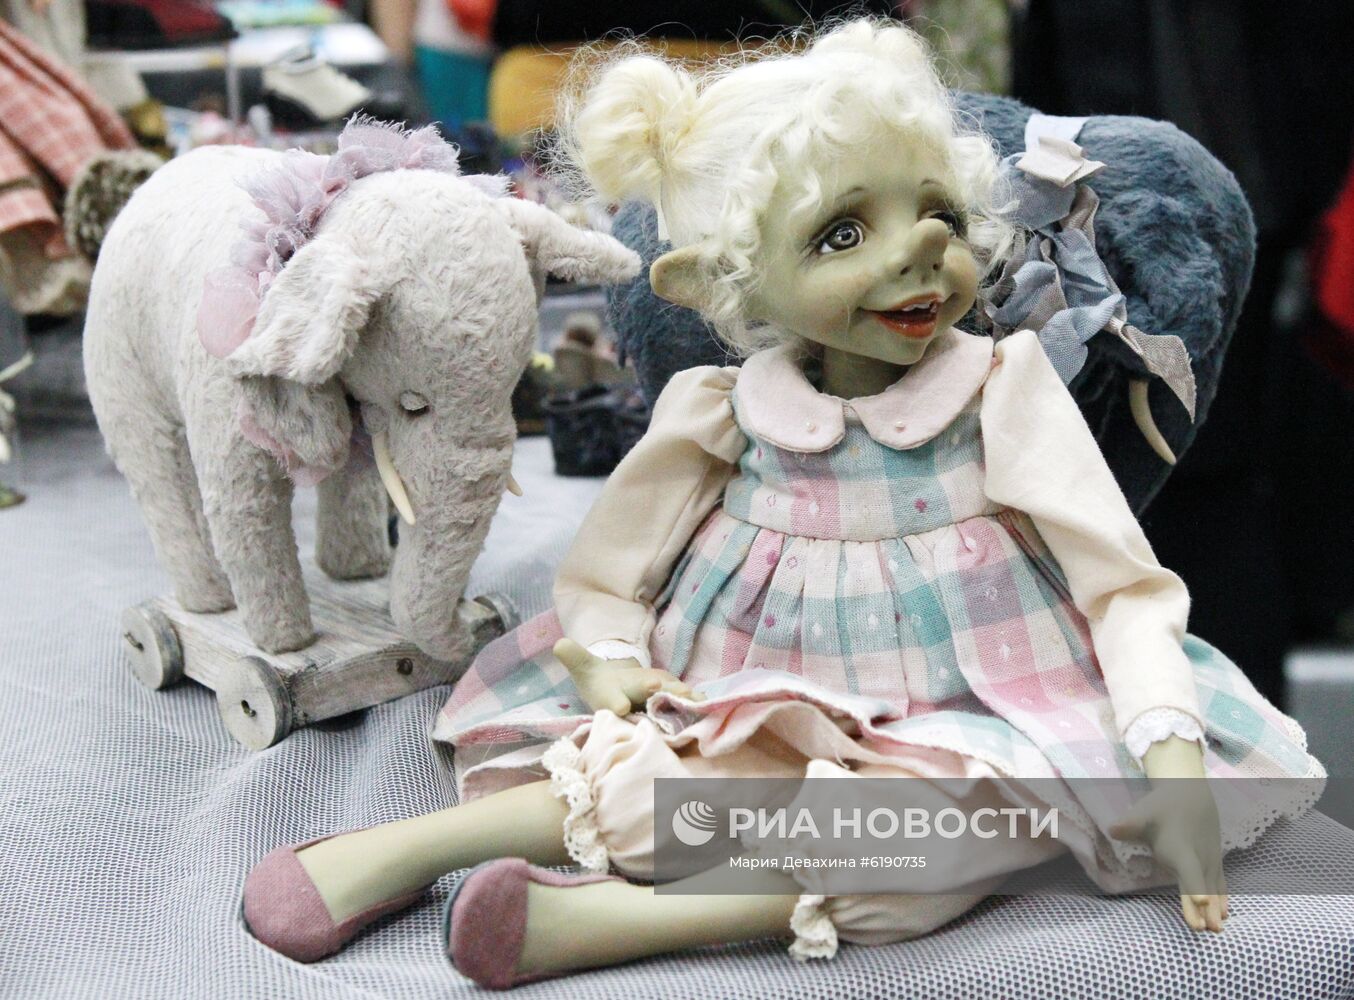 Международный весенний бал авторских кукол в Москве 